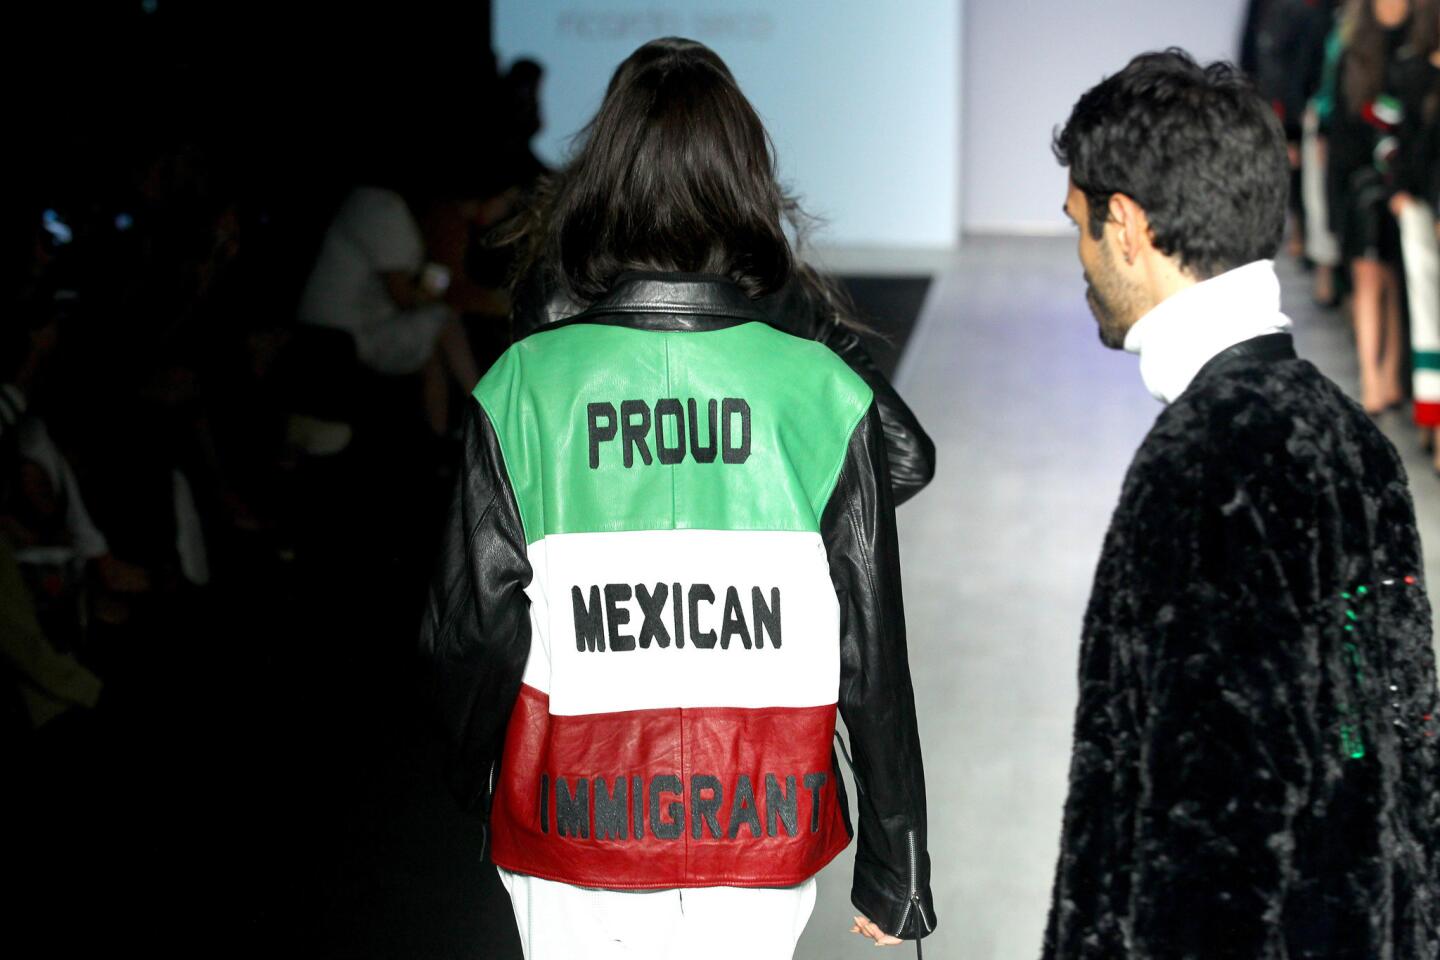 Los símbolos y colores mexicanos se entremezclan con expresiones en inglés como 'Proud mexican immigrant' (orgulloso inmigrante mexicano).